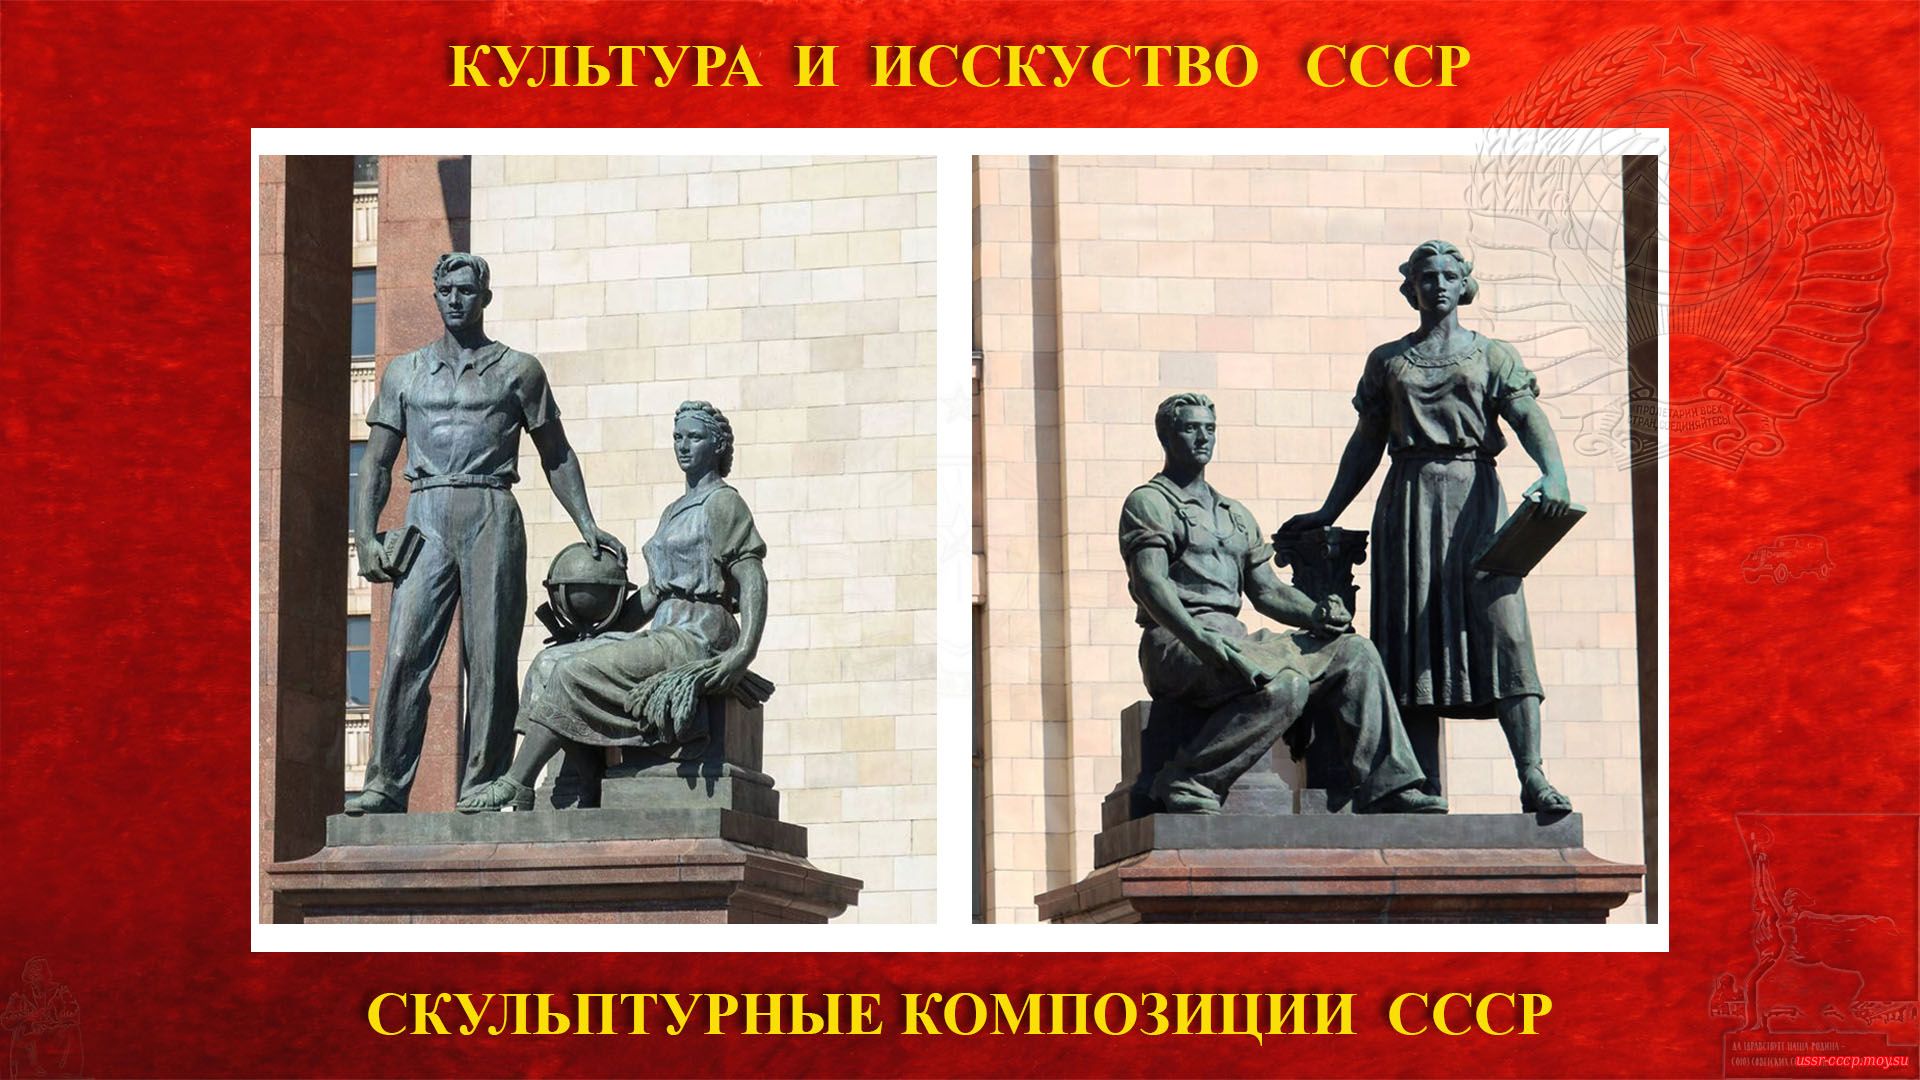 Скульптурные композиции «Молодежь в науке» и «Молодежь в труде» на Ленинских горах (Москва 1953)